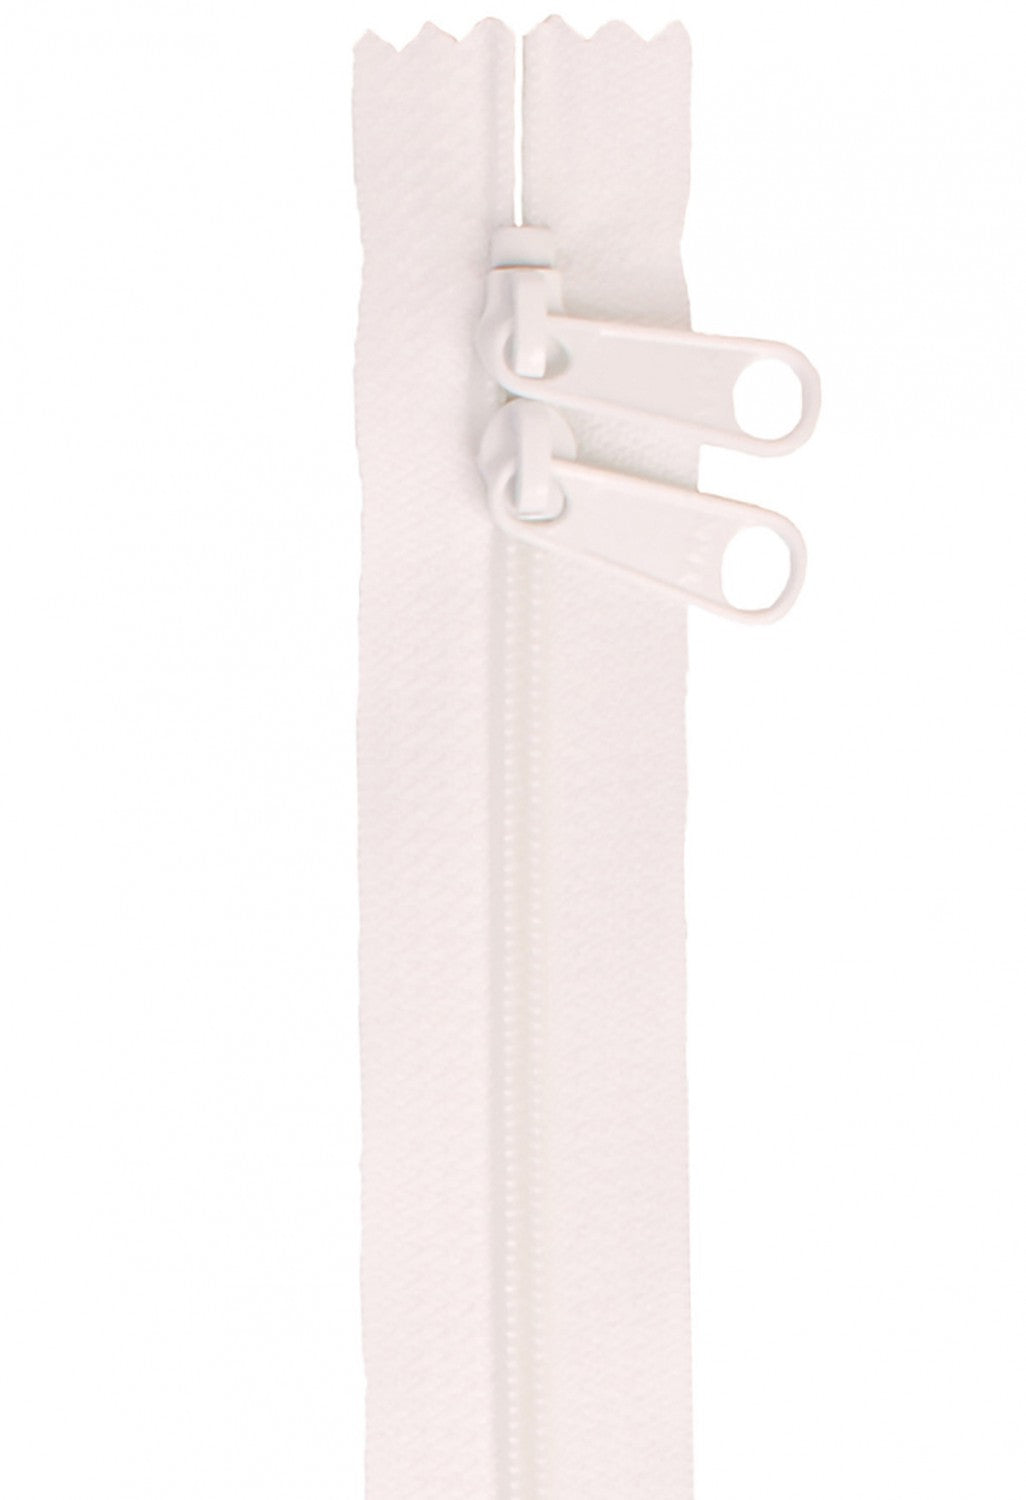 Double Slide Handbag Zipper - White